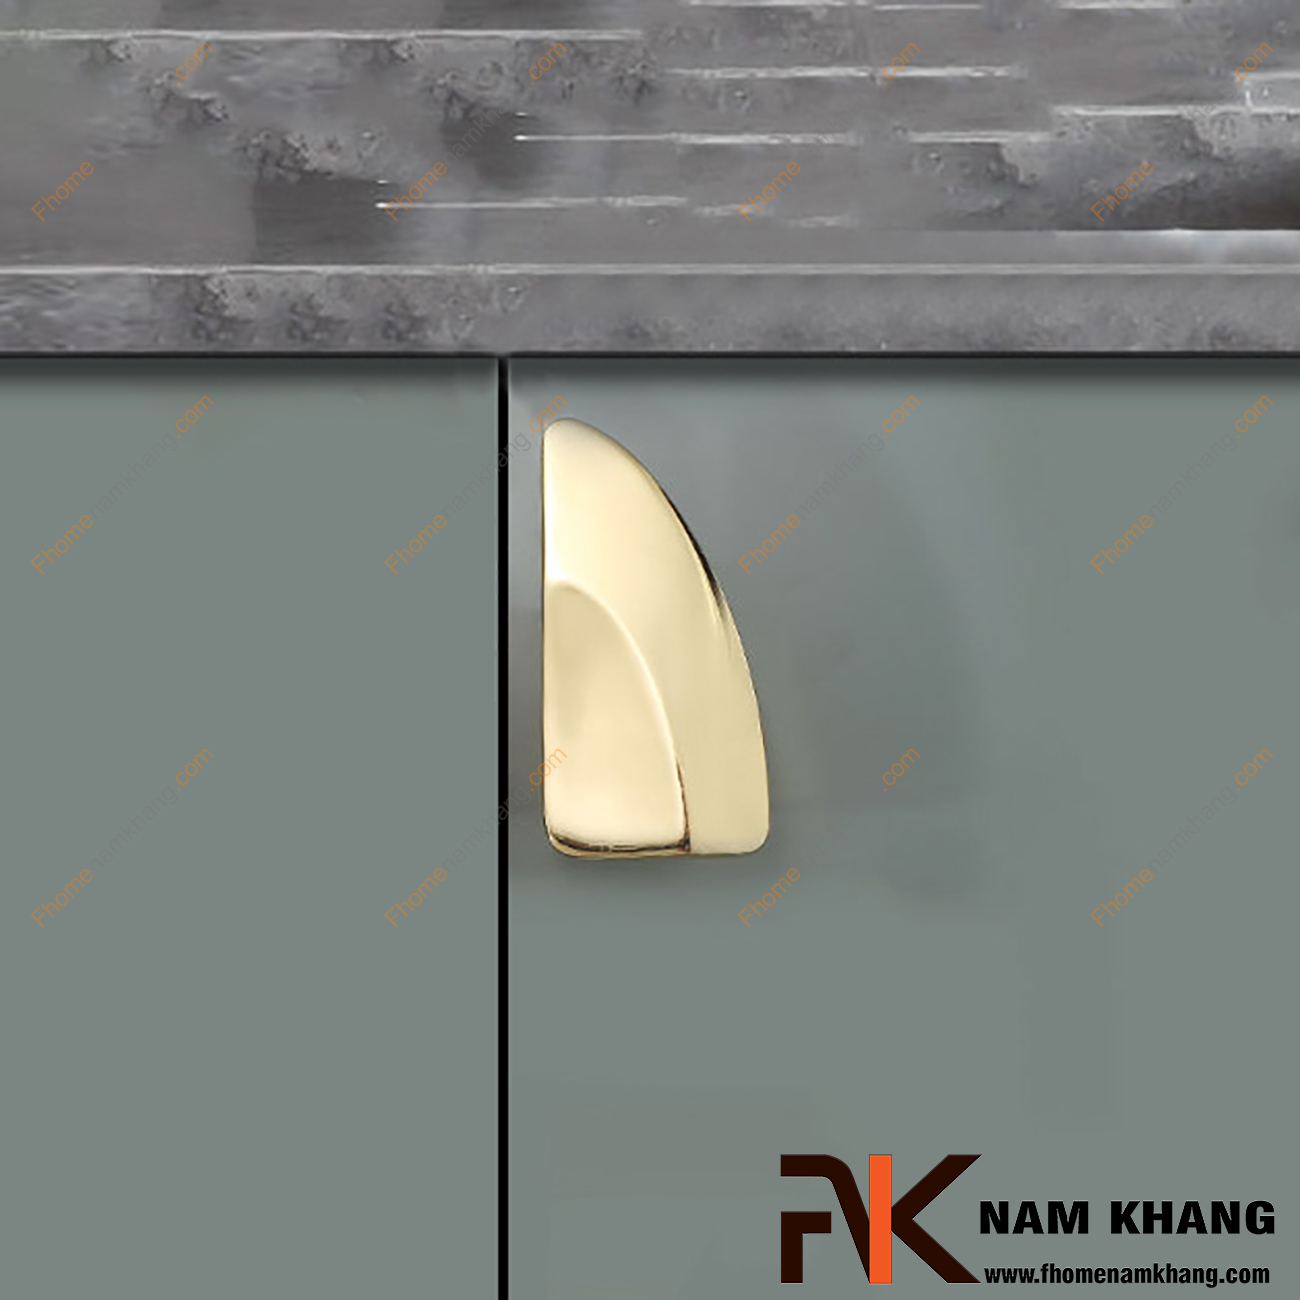 Tay nắm tủ màu vàng bóng cao cấp NK487-32V là mẫu tay nắm tủ nhỏ gọn và có thể lắp ghép thành 1 bộ 4 tay nắm hoàn chỉnh